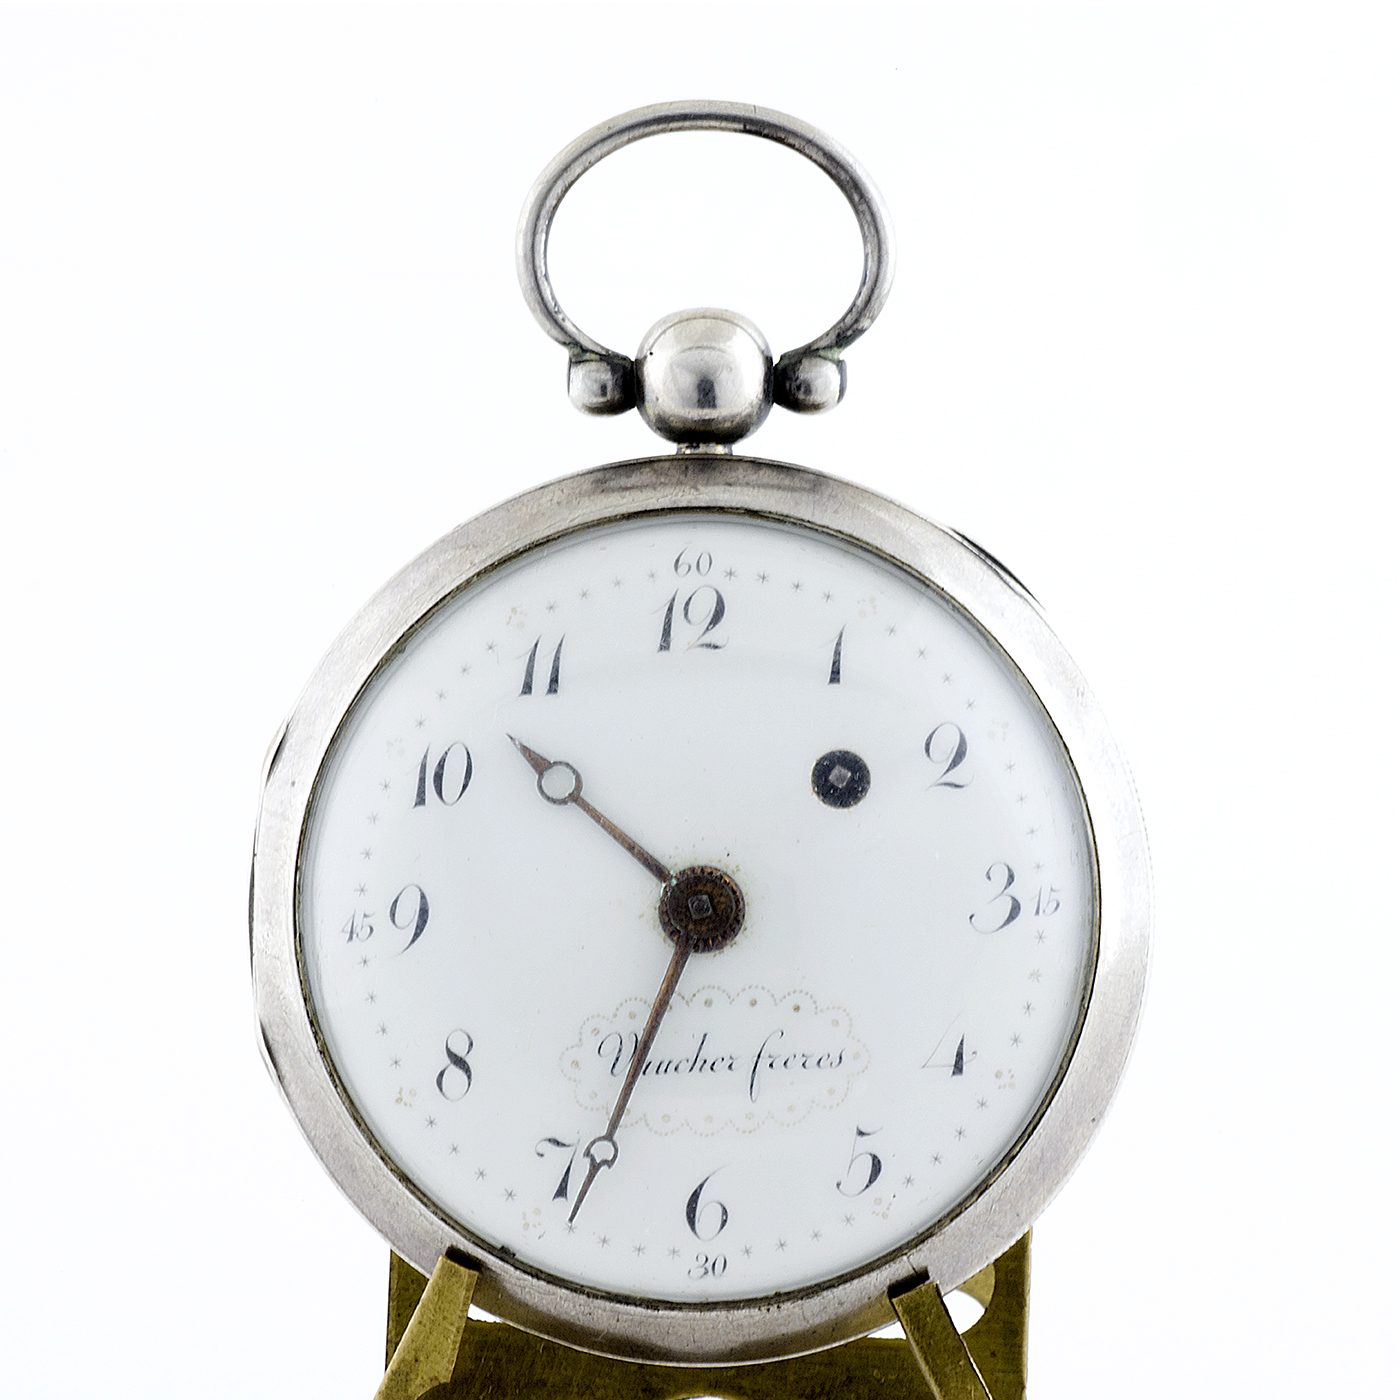 VAUCHER ET FRERES. (Baillie, pág. 325). Reloj de Bolsillo, lepine, Verge Fuseé (Catalino). Plata de Ley. Fleurier, Francia. Ca. 1800.